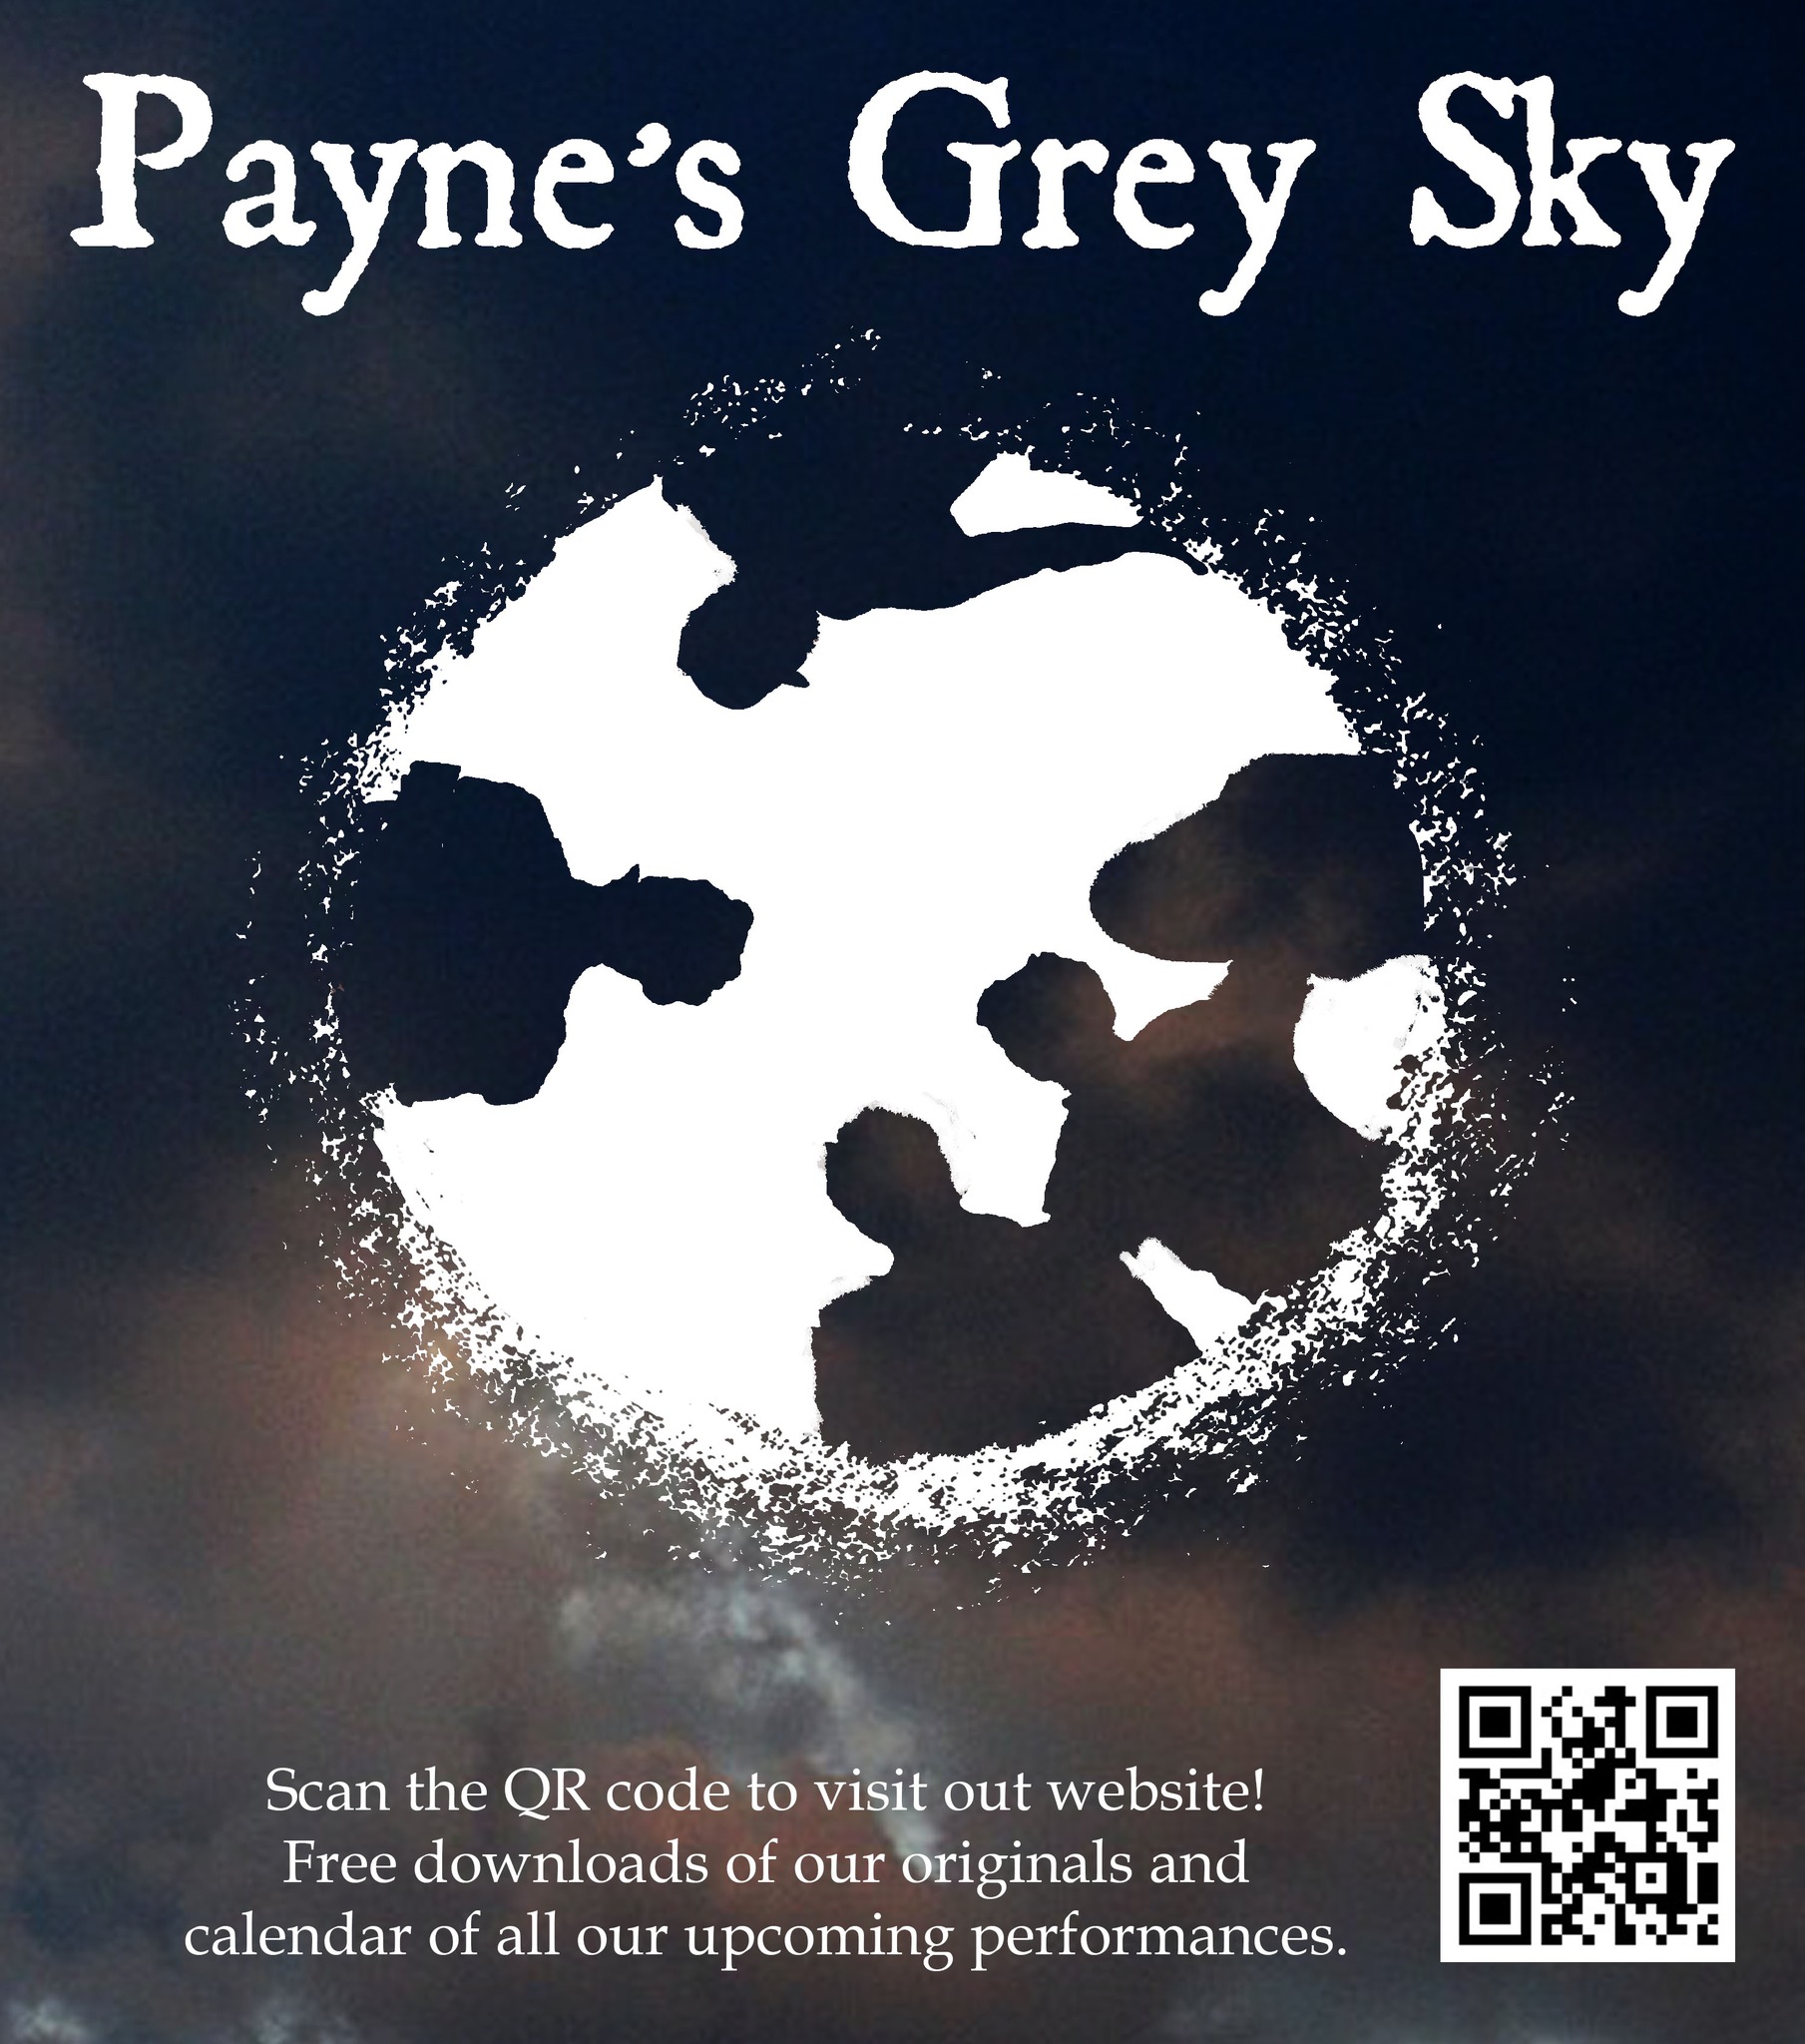 Payne's Greay Sky at RMV Cellars